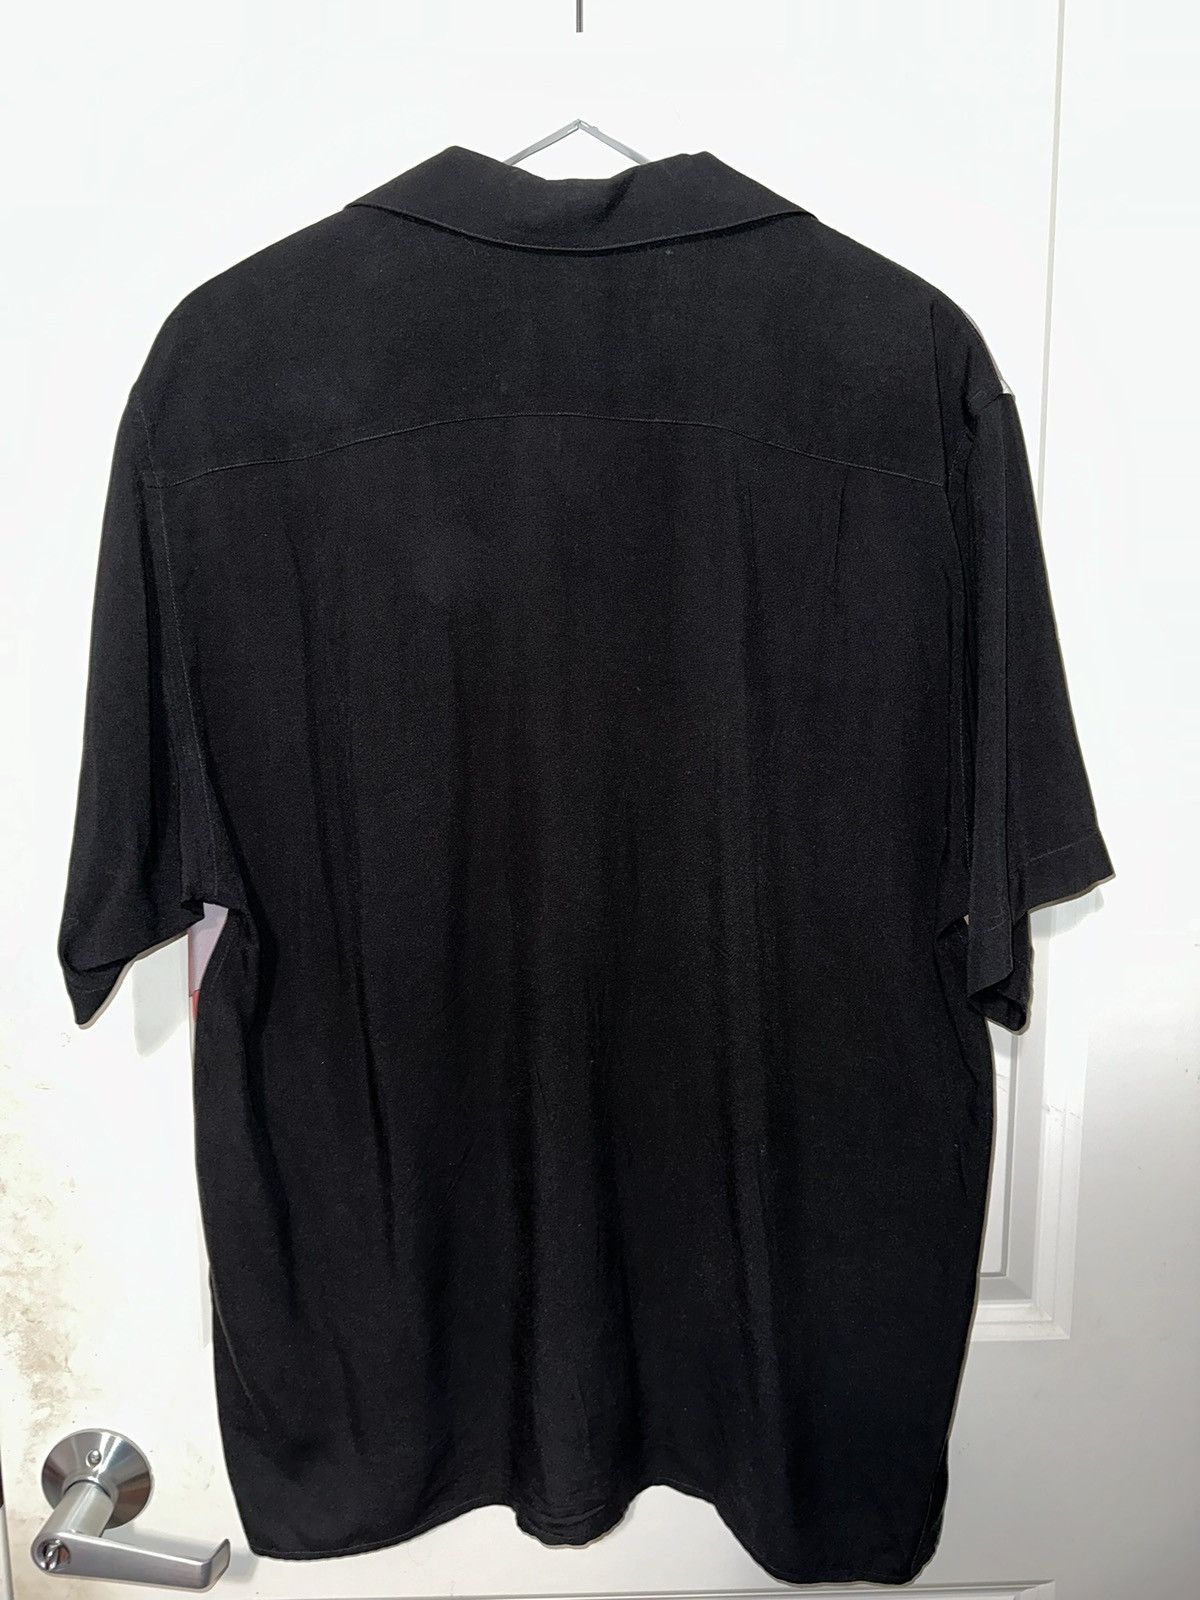 Supreme Emilio Pucci S/S Shirt Black